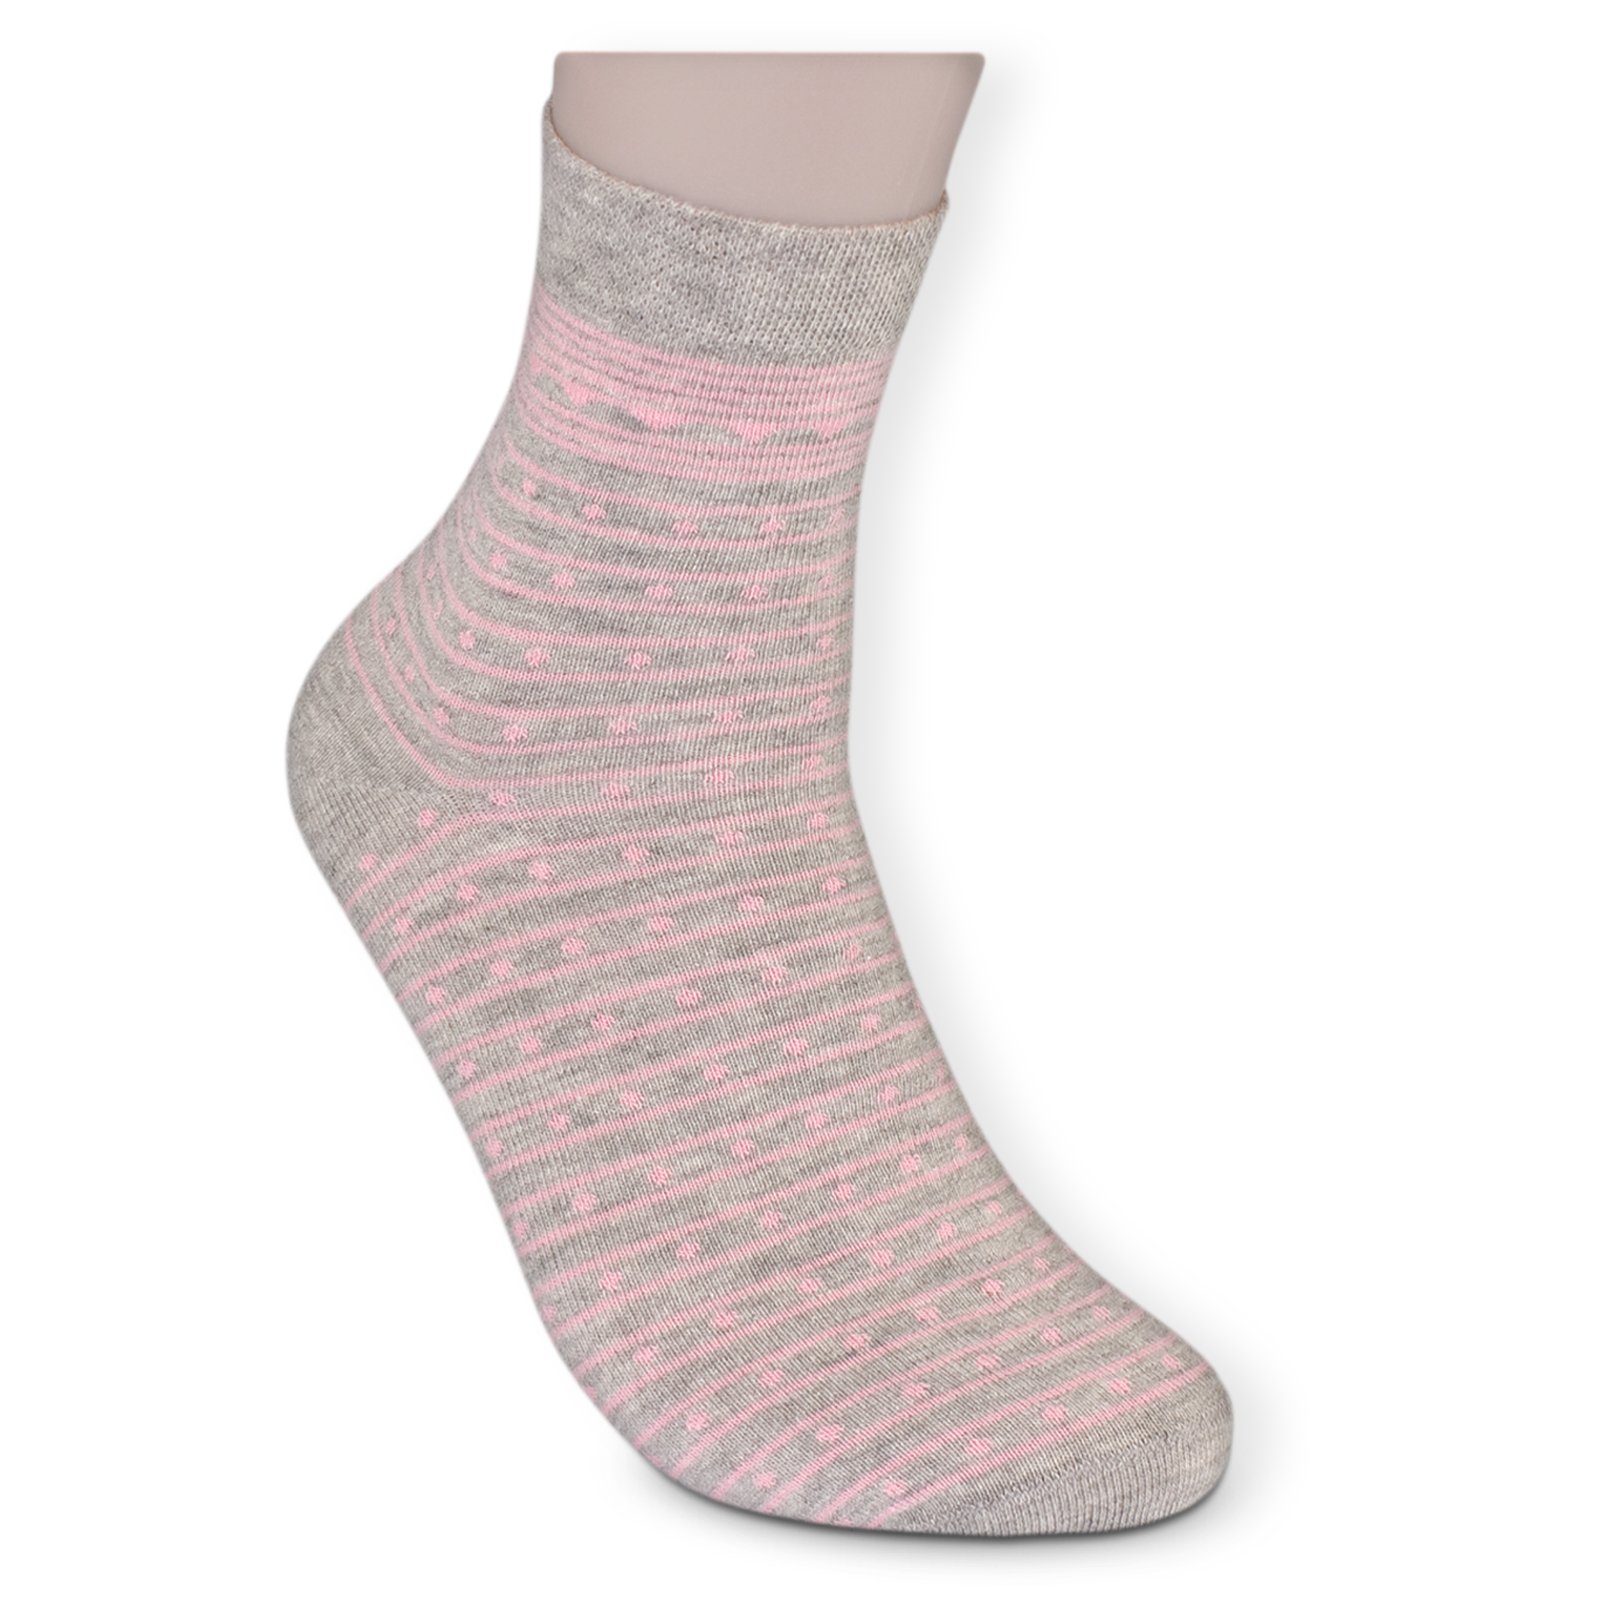 Die Sockenbude Kurzsocken WELLNESS Komfortbund mit Gummi grau) 5-Paar, ohne (Bund, rosa